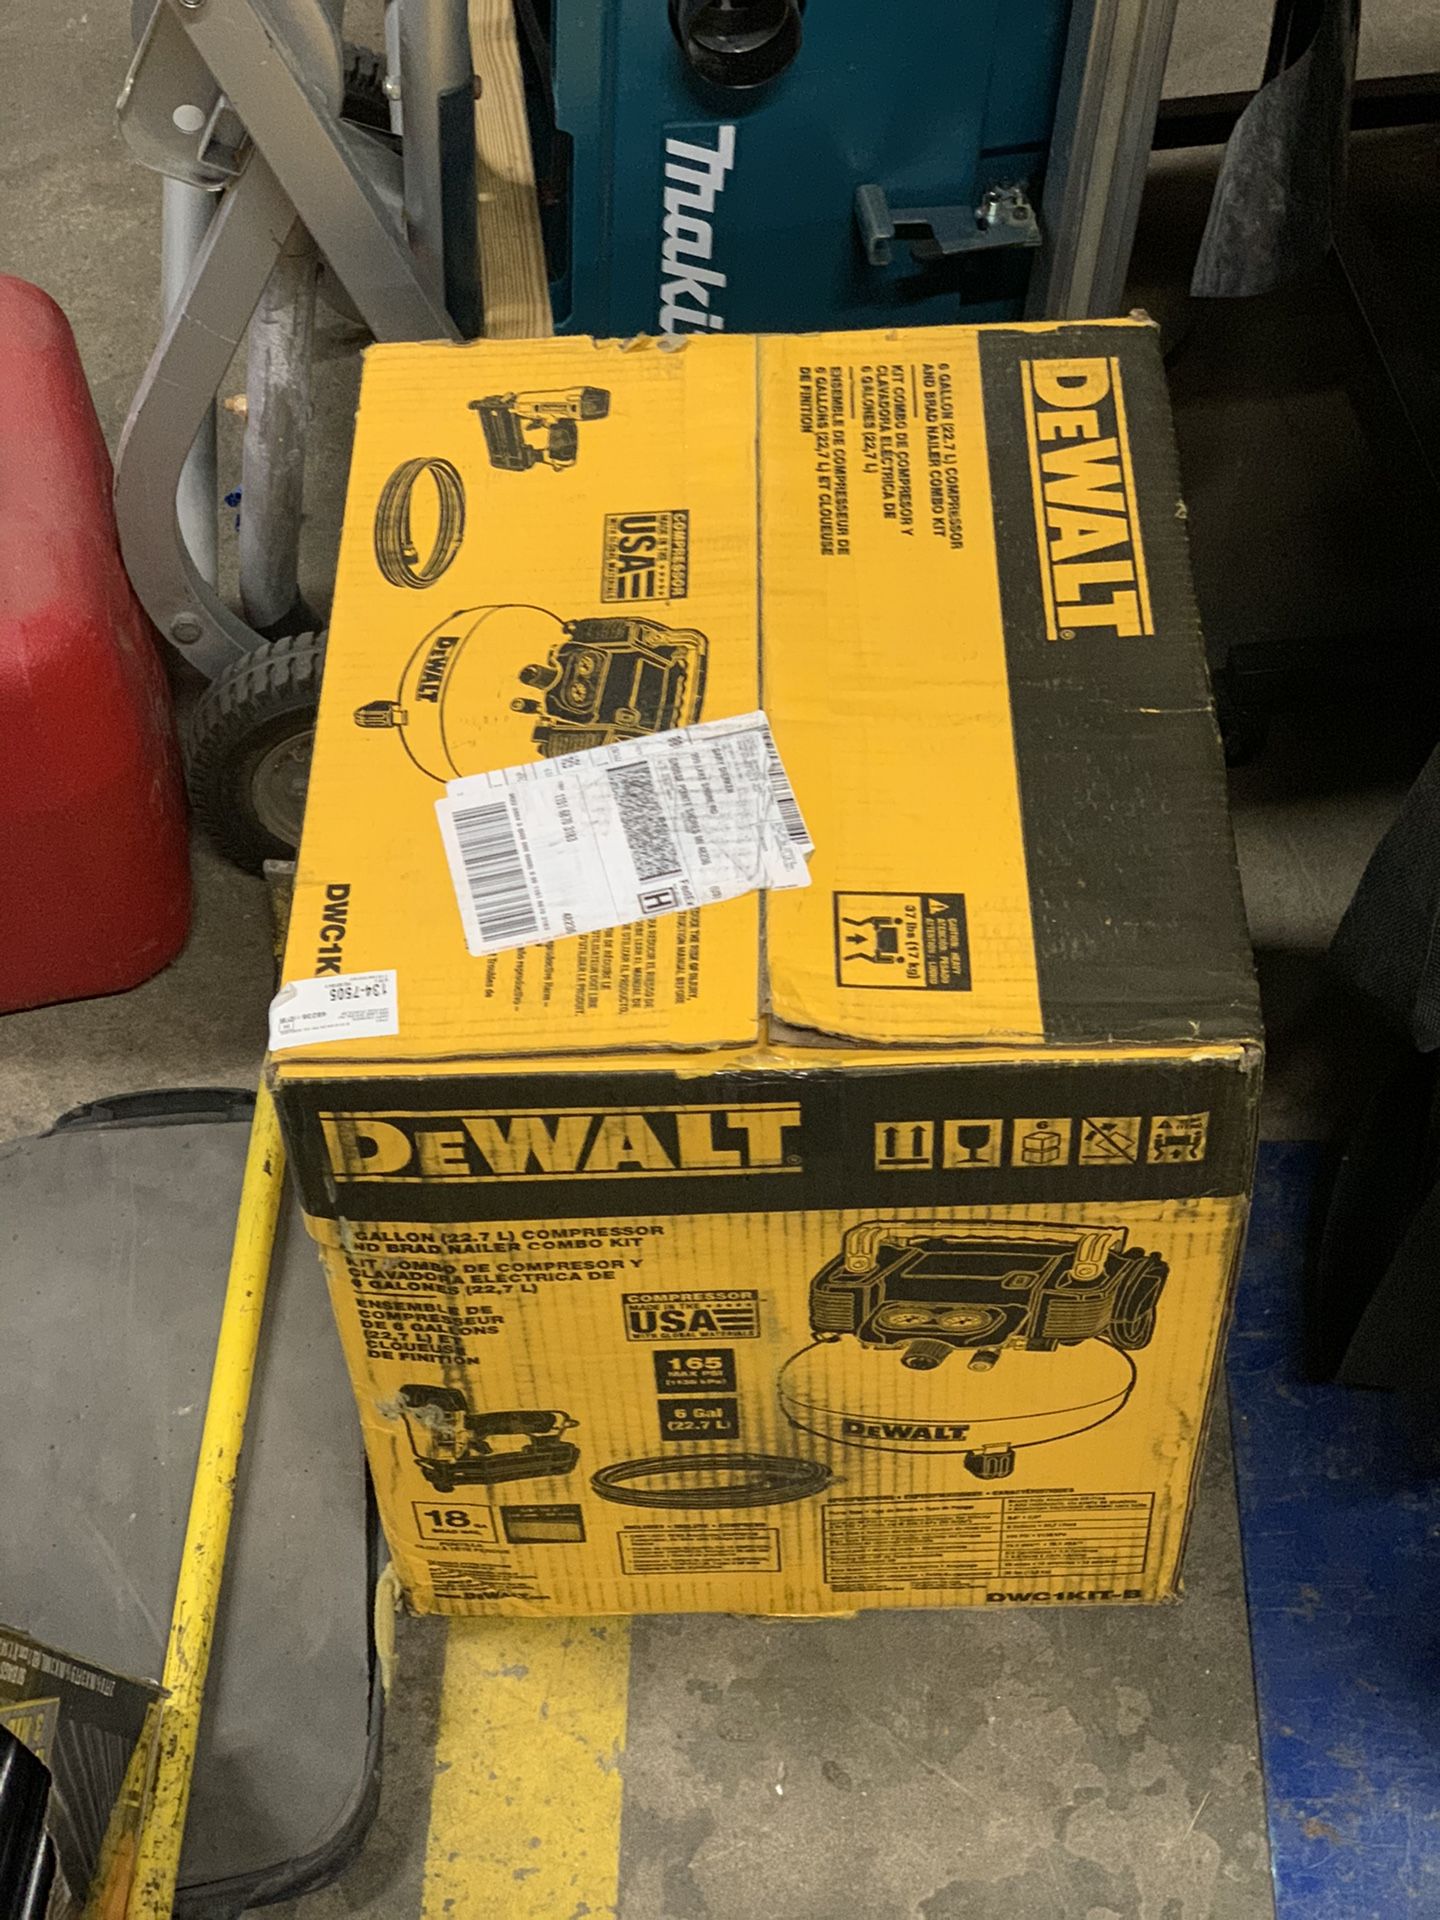 Unopened Dewalt compressor, brad nailer and air hose set